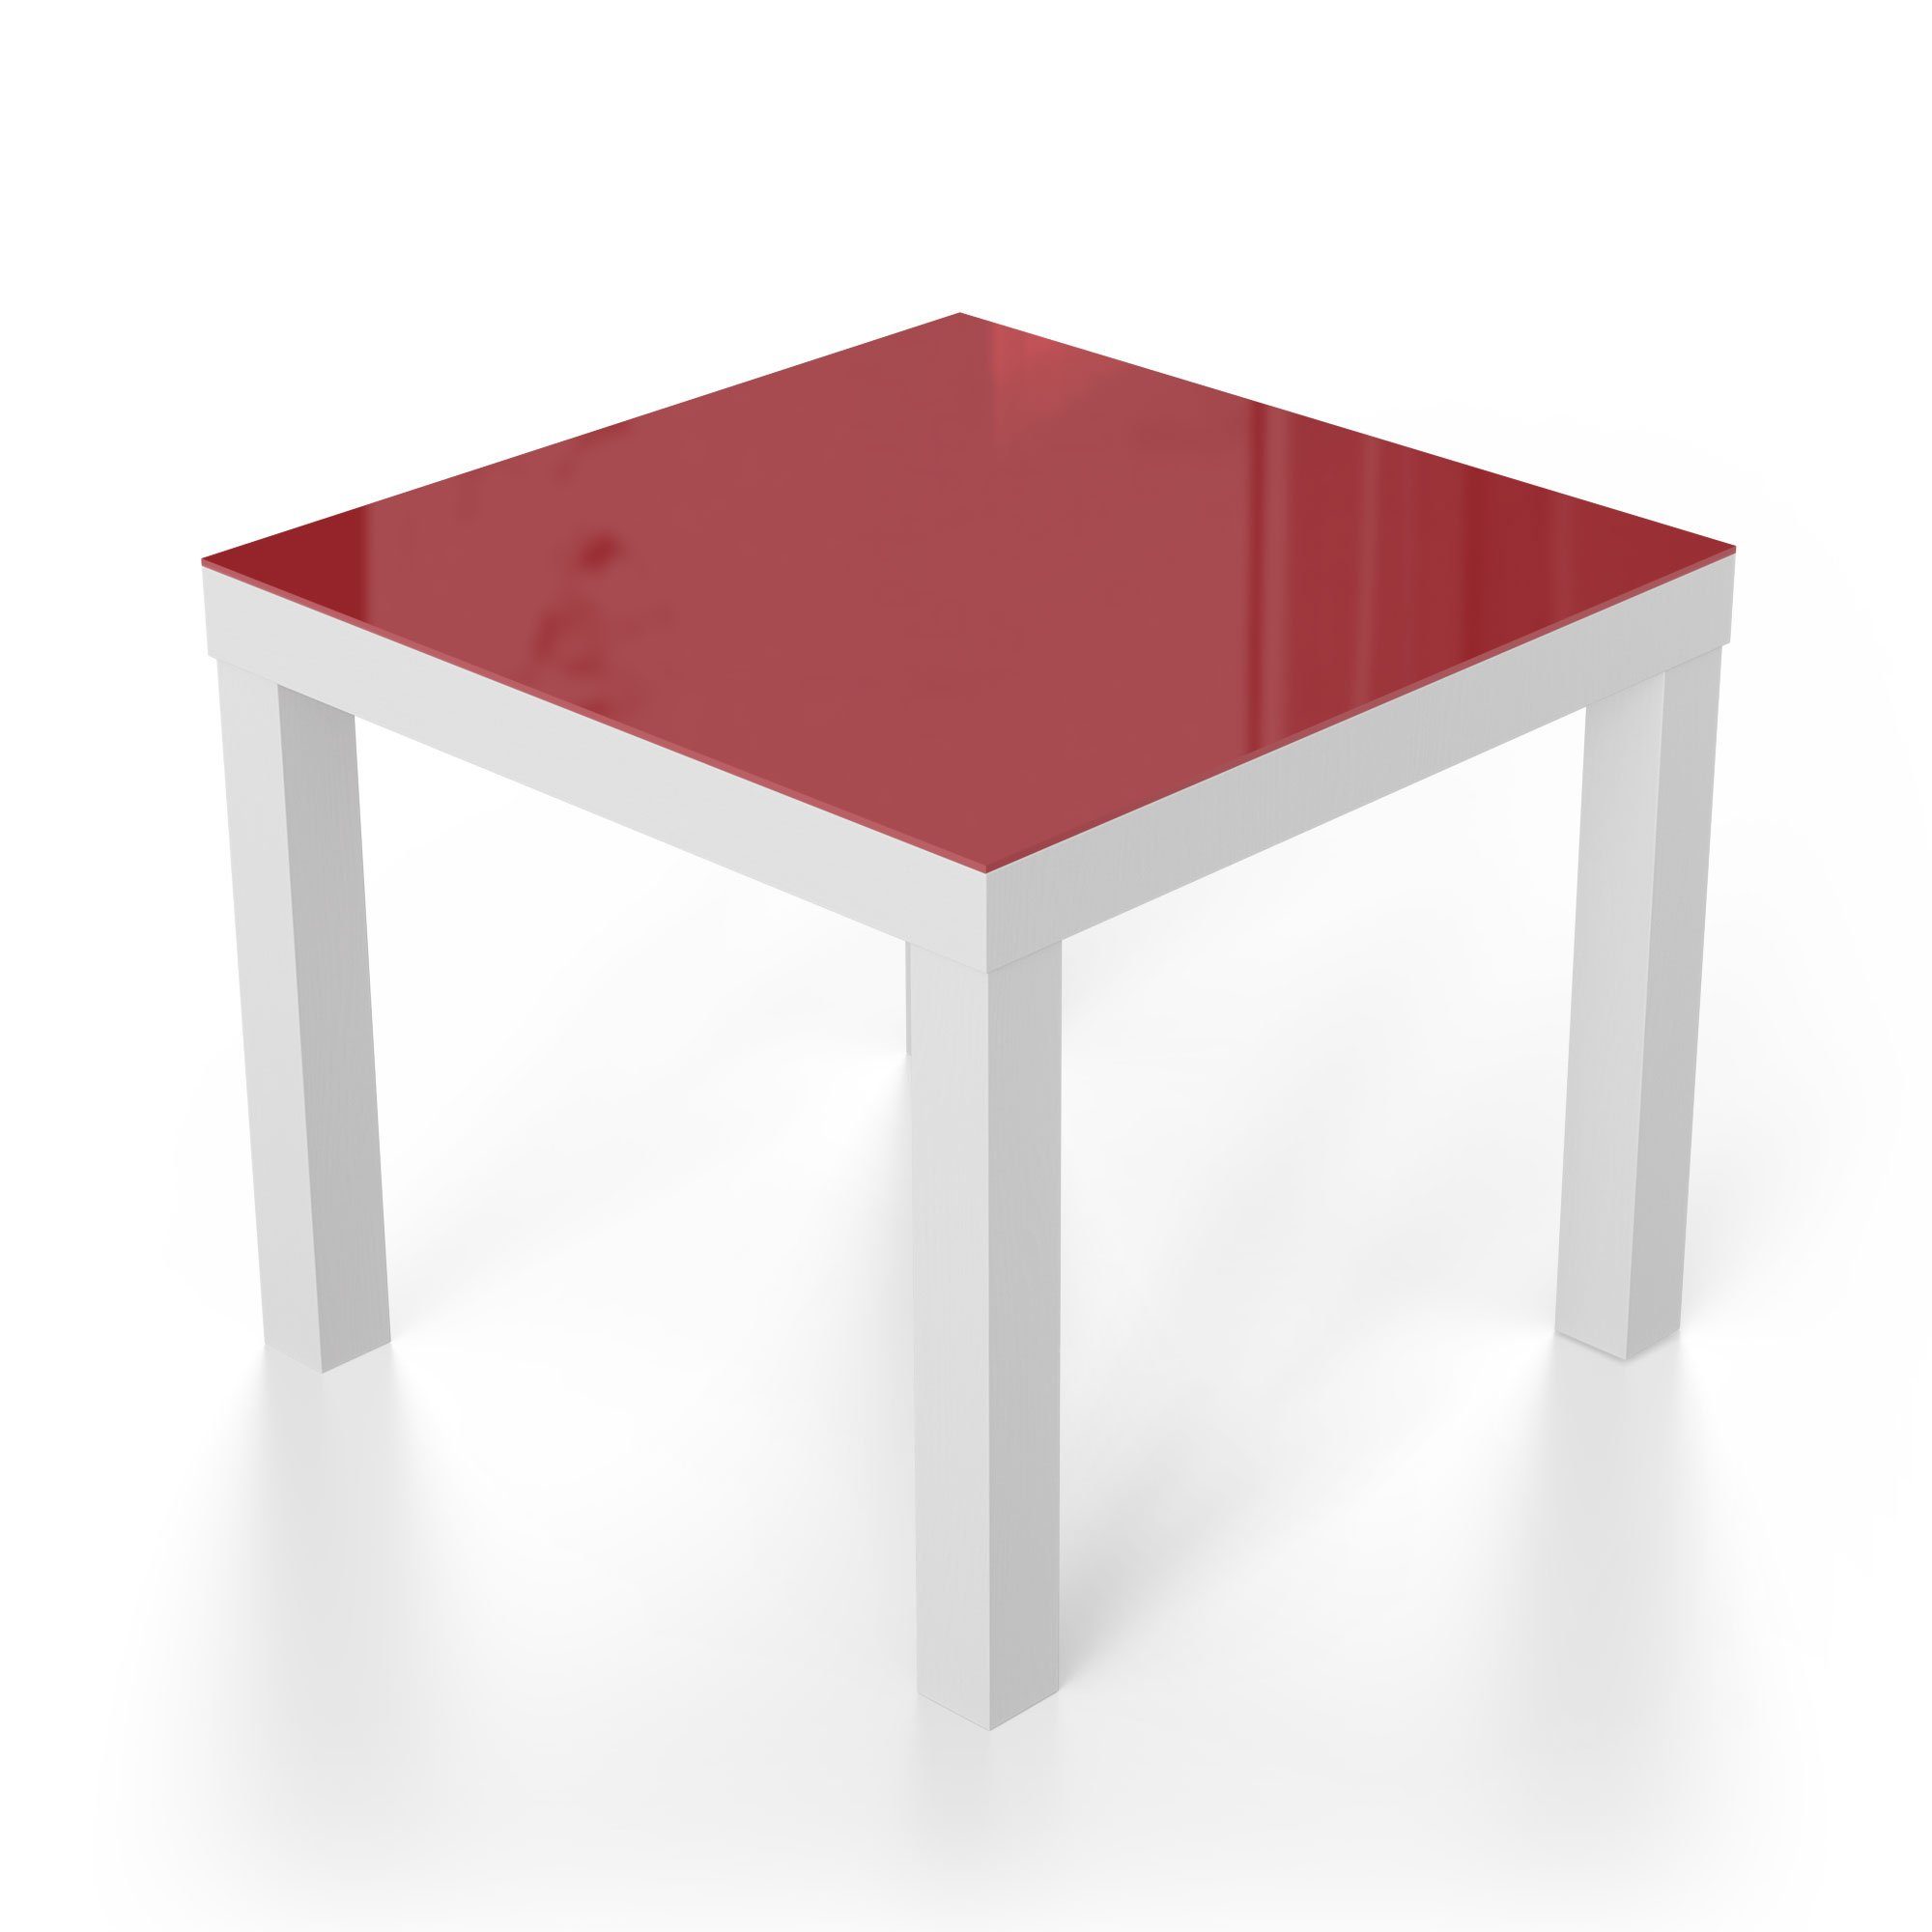 Glastisch - 'Unifarben Couchtisch Glas Beistelltisch modern Rot', DEQORI Weiß